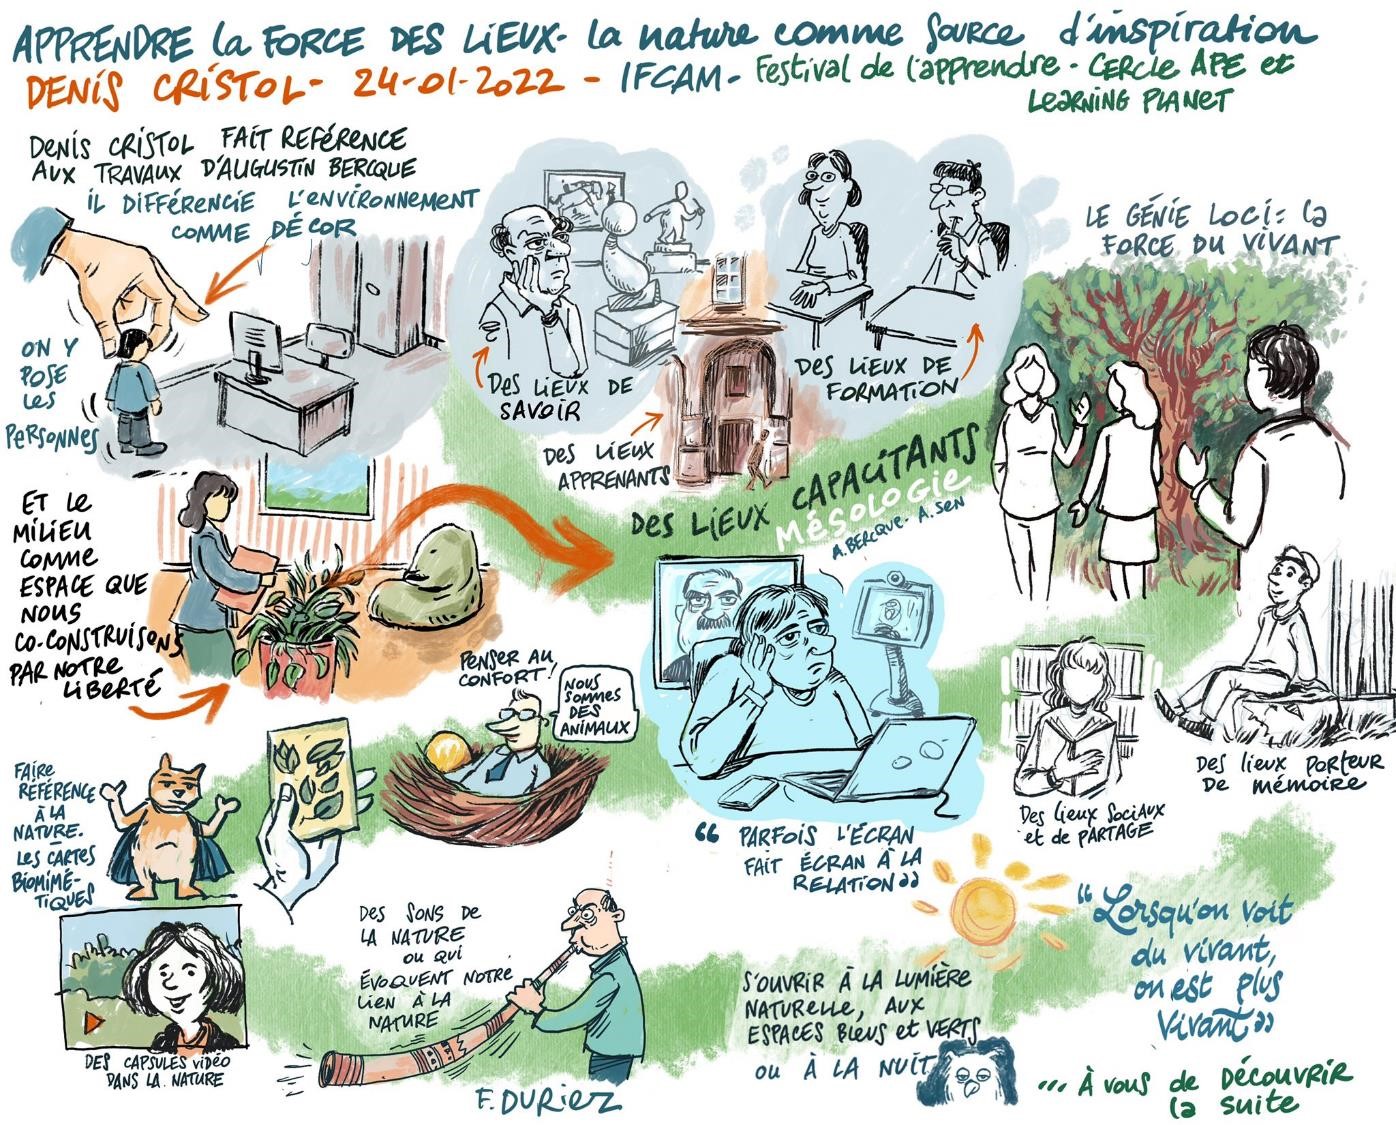 Le festival de l'Apprendre à l'IFCAM - Illustration de Frédéric Duriez